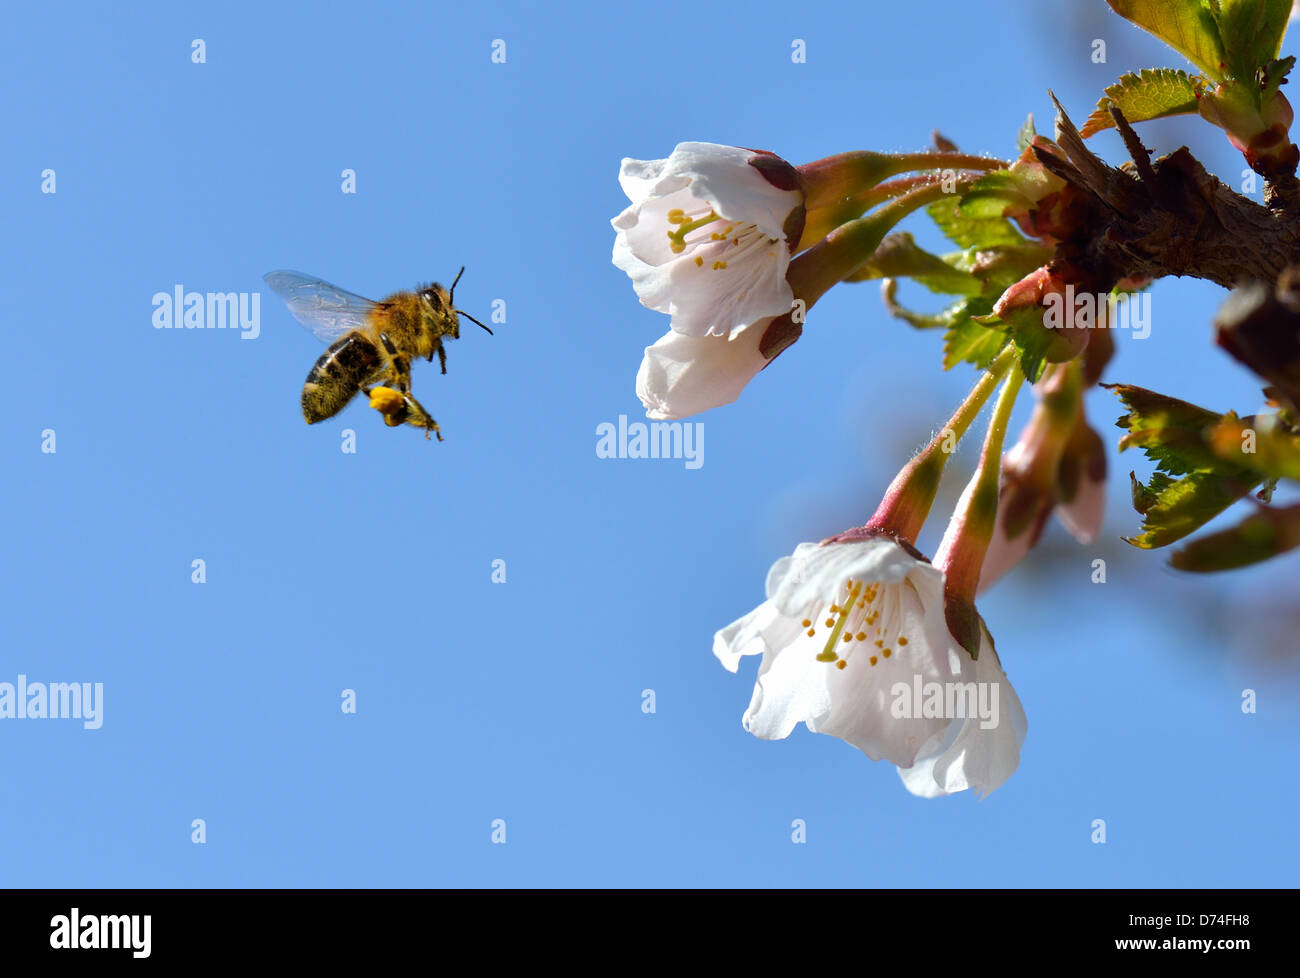 Una abeja en una flor en vuelo Foto de stock